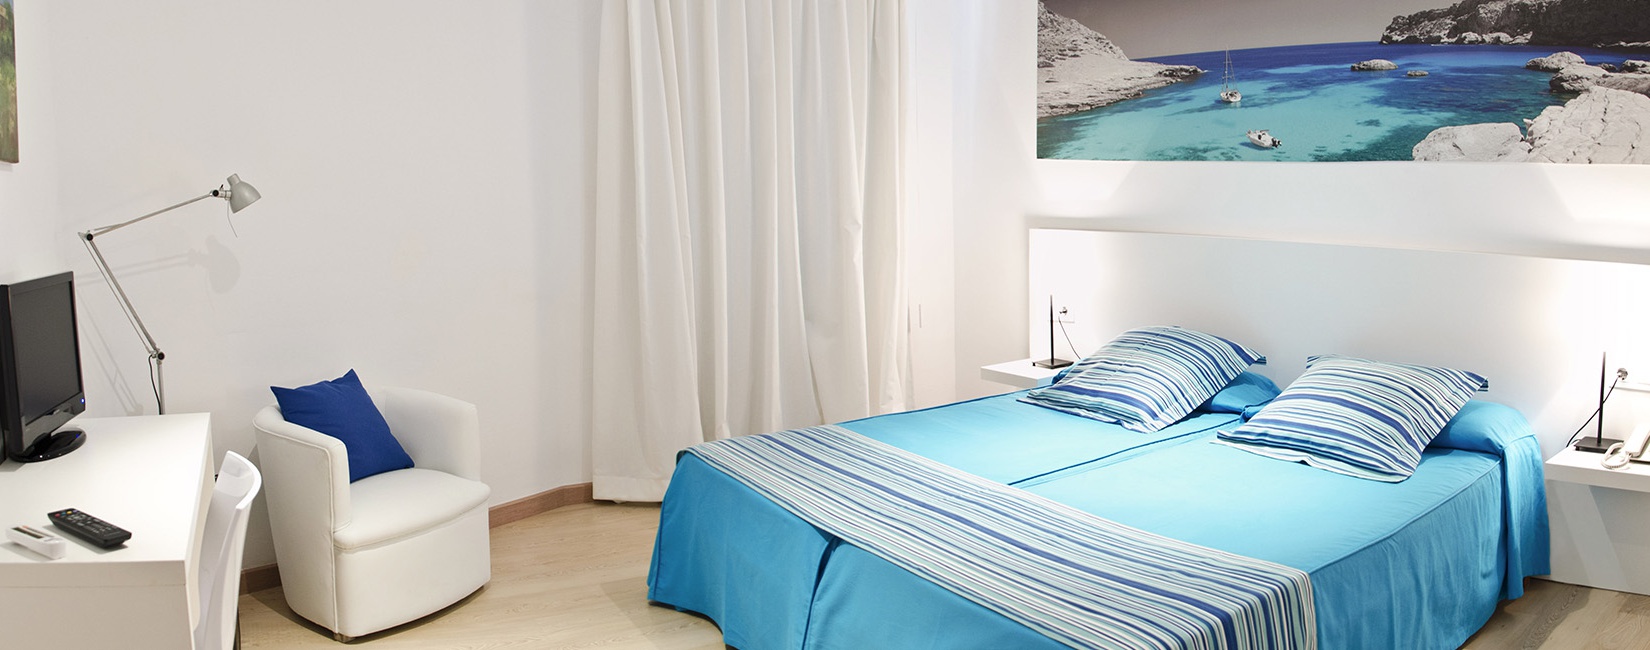 Habitaciones Hotel Capri